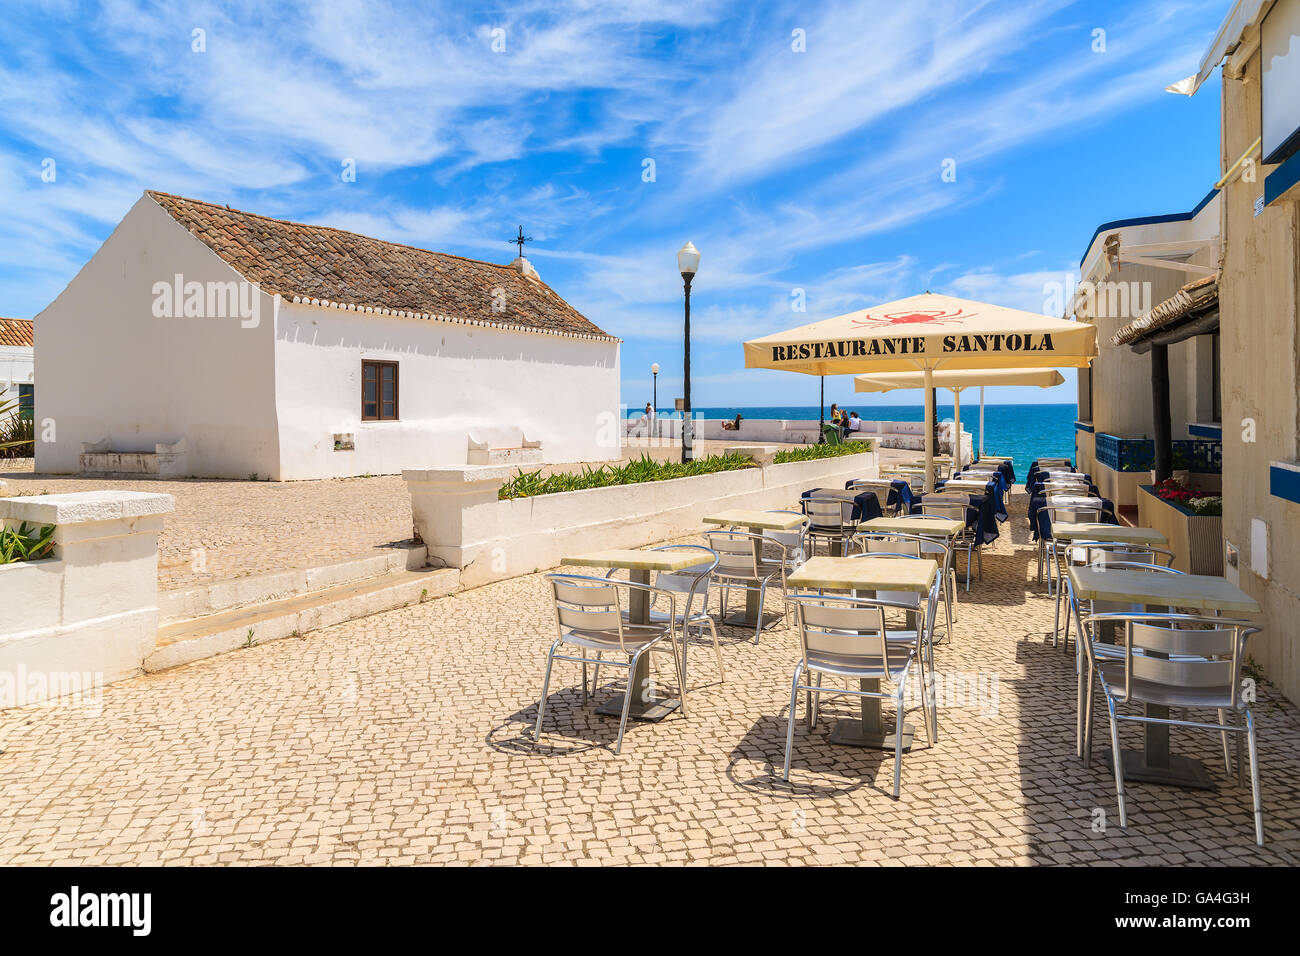 ARMACAO DE PERA comune, Portogallo - 17 Maggio 2015: ristorante tavoli e chiesa bianca sulla passeggiata costiera in Armacao de Pera cittadina sul mare. Regione di Algarve è di vacanza popolare destinazione turistica in estate. Foto Stock